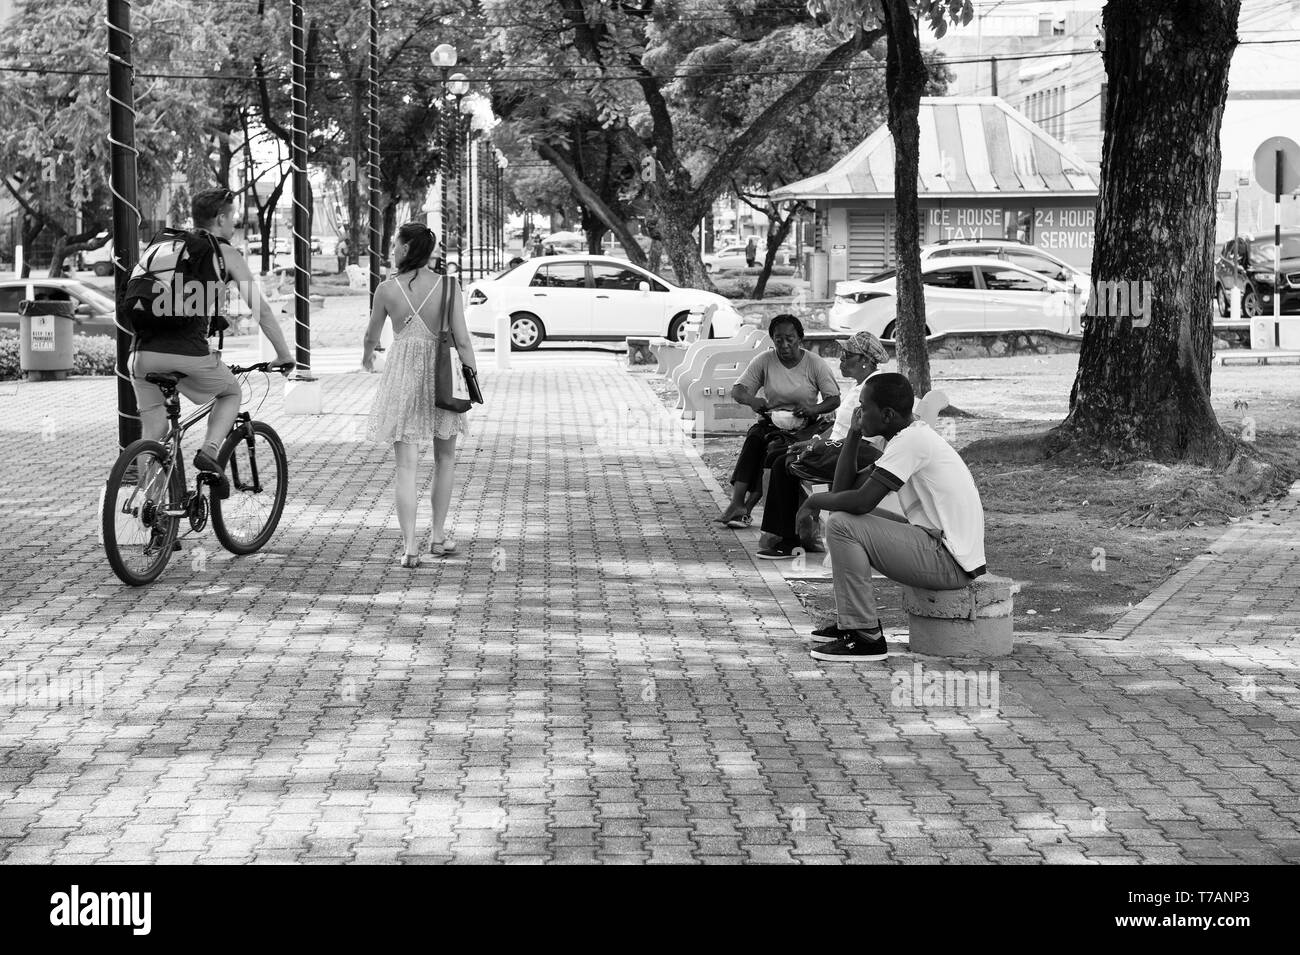 Porto di Spagna, Trinidad e Tobago - Novembre 28, 2015: americano africano gente seduta sul banco in posizione di parcheggio con il giovane coppia di bella ragazza camminare vicino a uomo sportiva in bicicletta per esterno Foto Stock